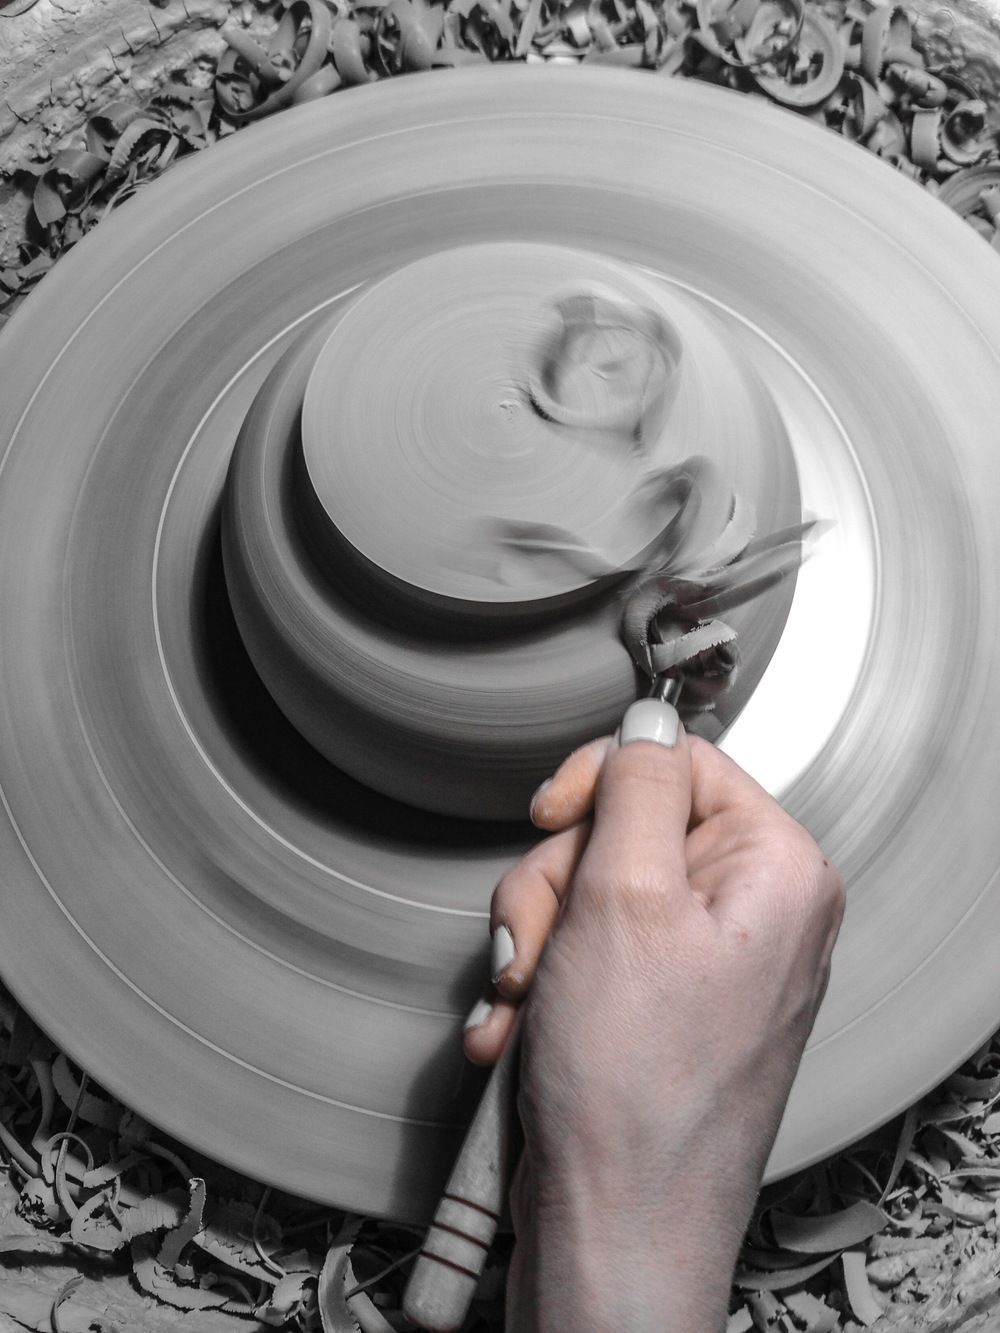 Trimming a Porcelain Bowl